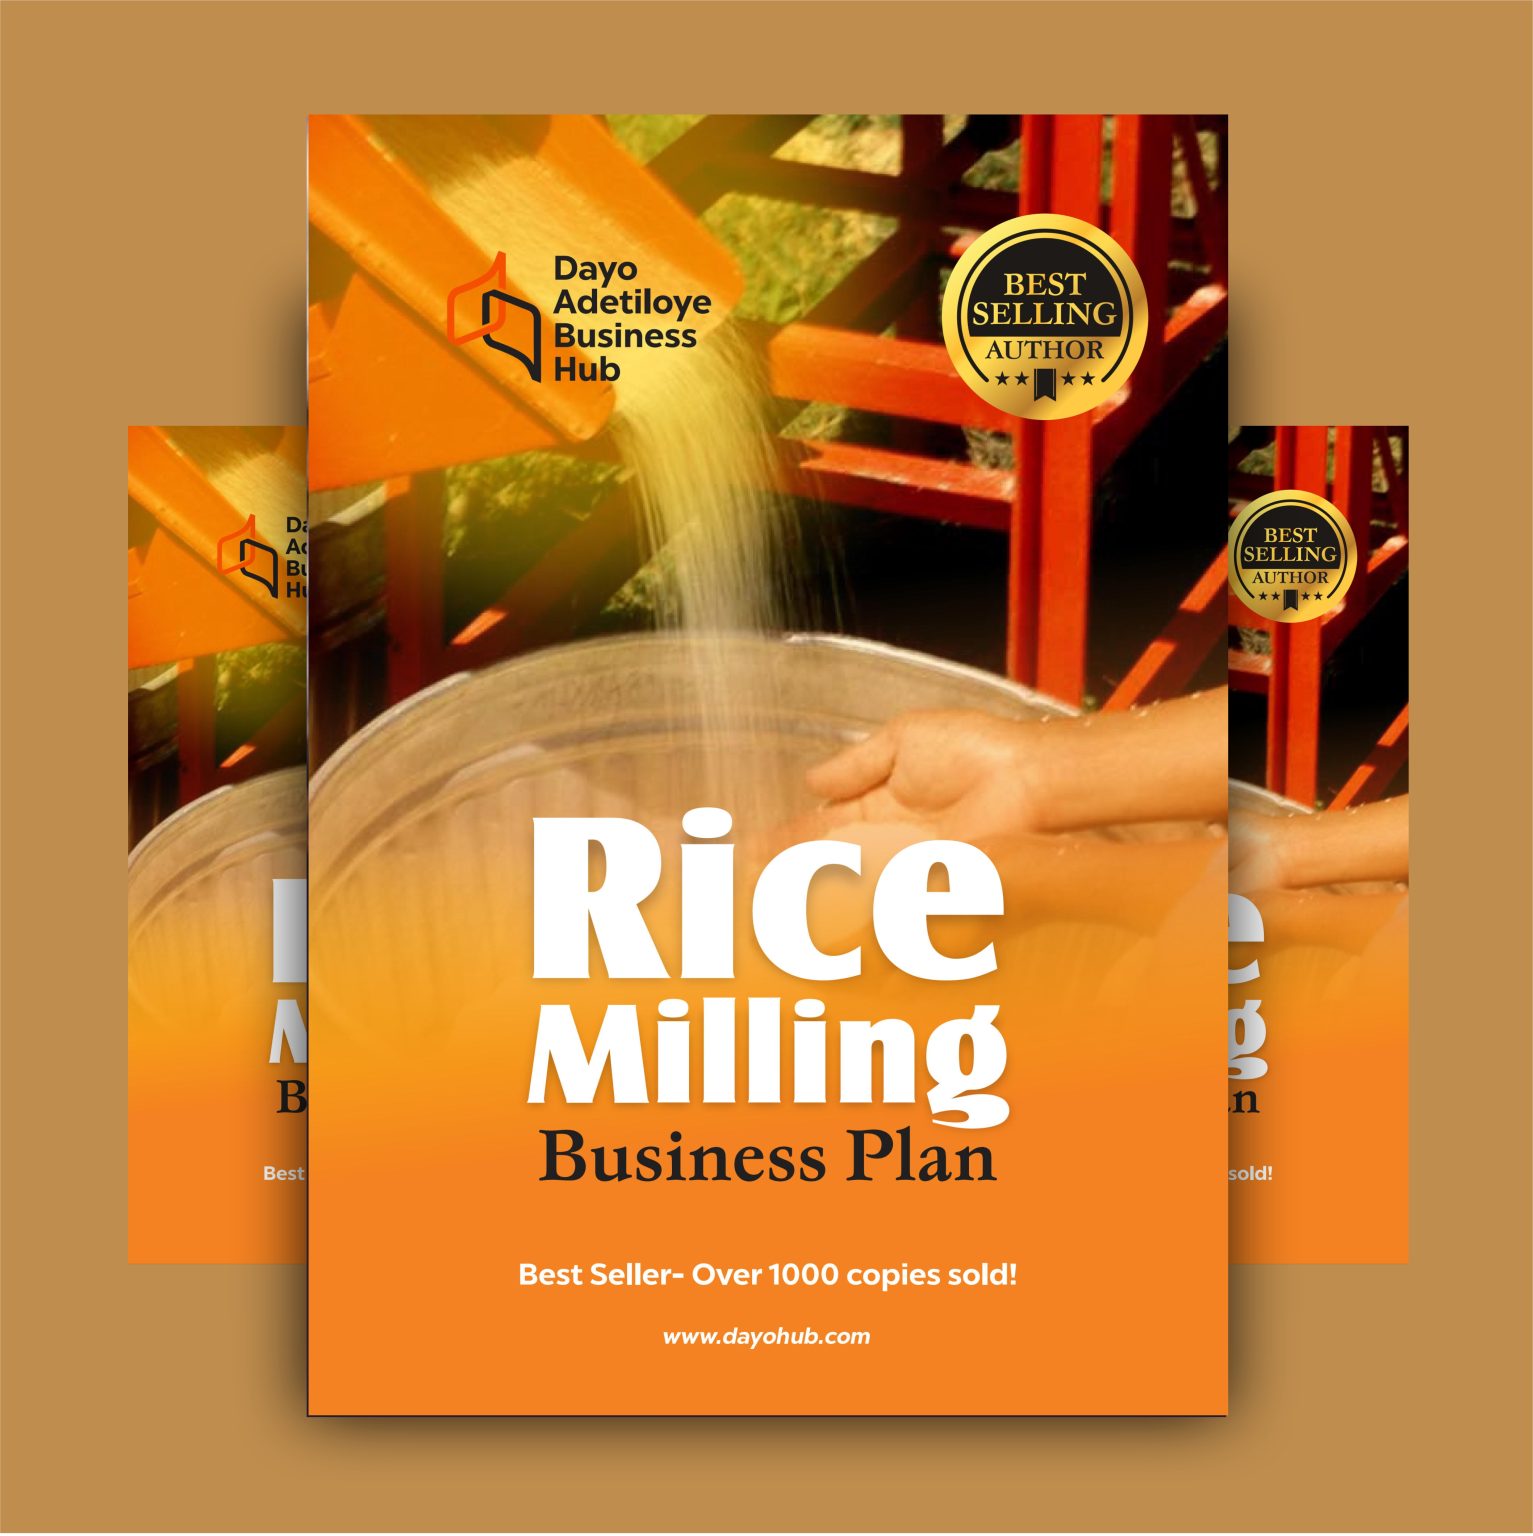 rice milling business plan in nigeria pdf